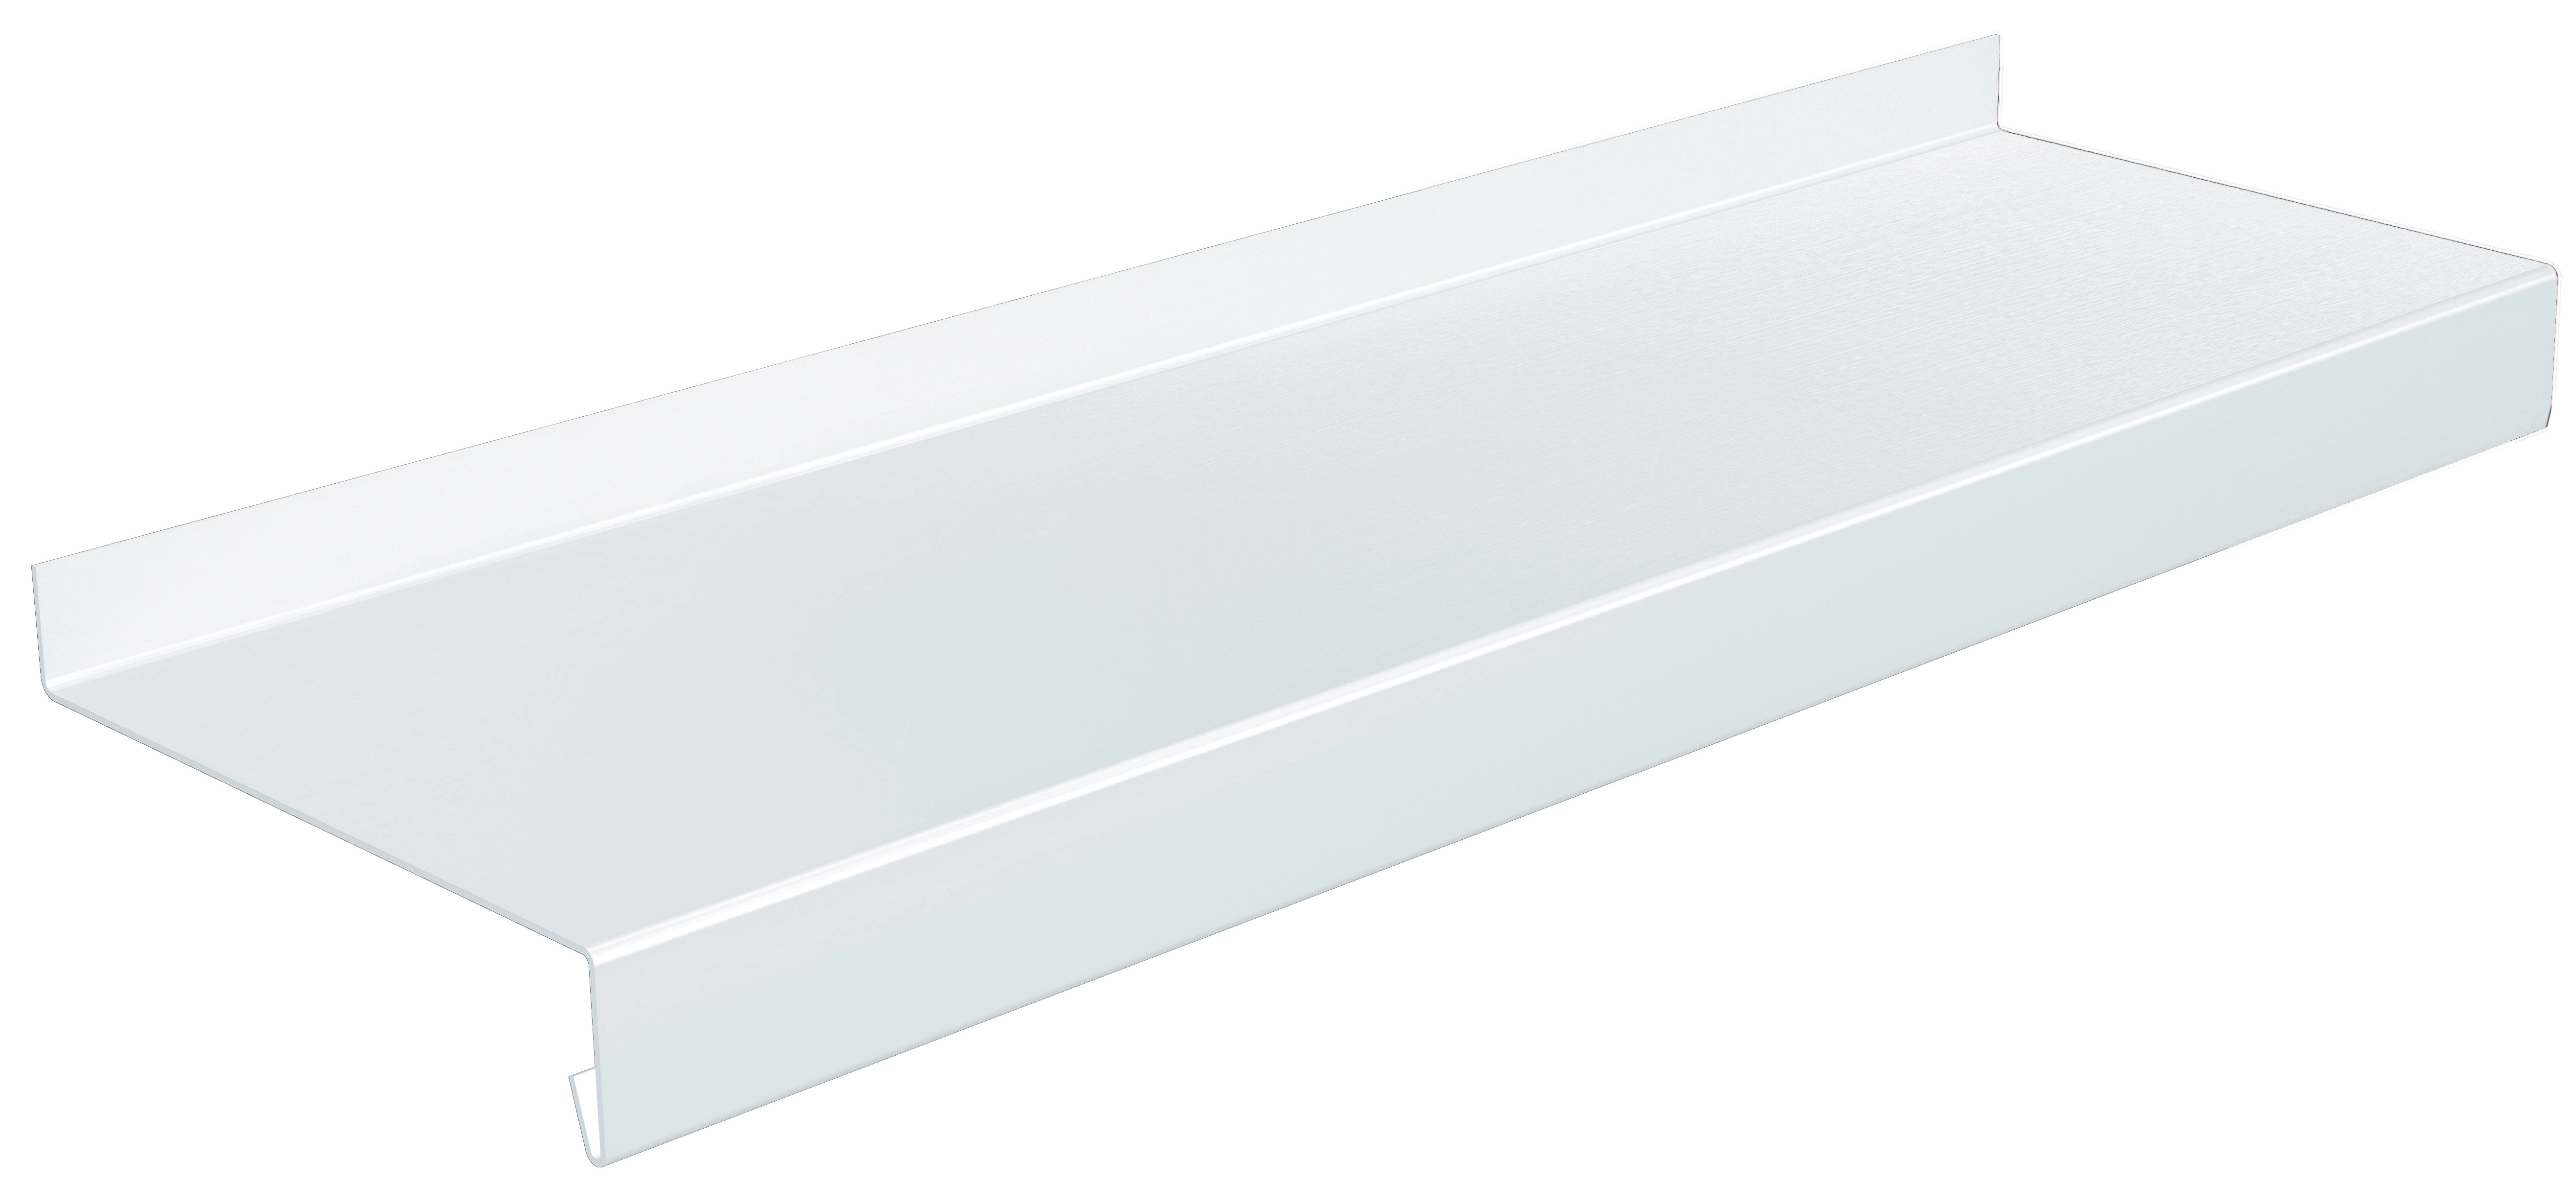 Fensterbank Aluminium Weiß 11 cm x 125 cm kaufen bei OBI